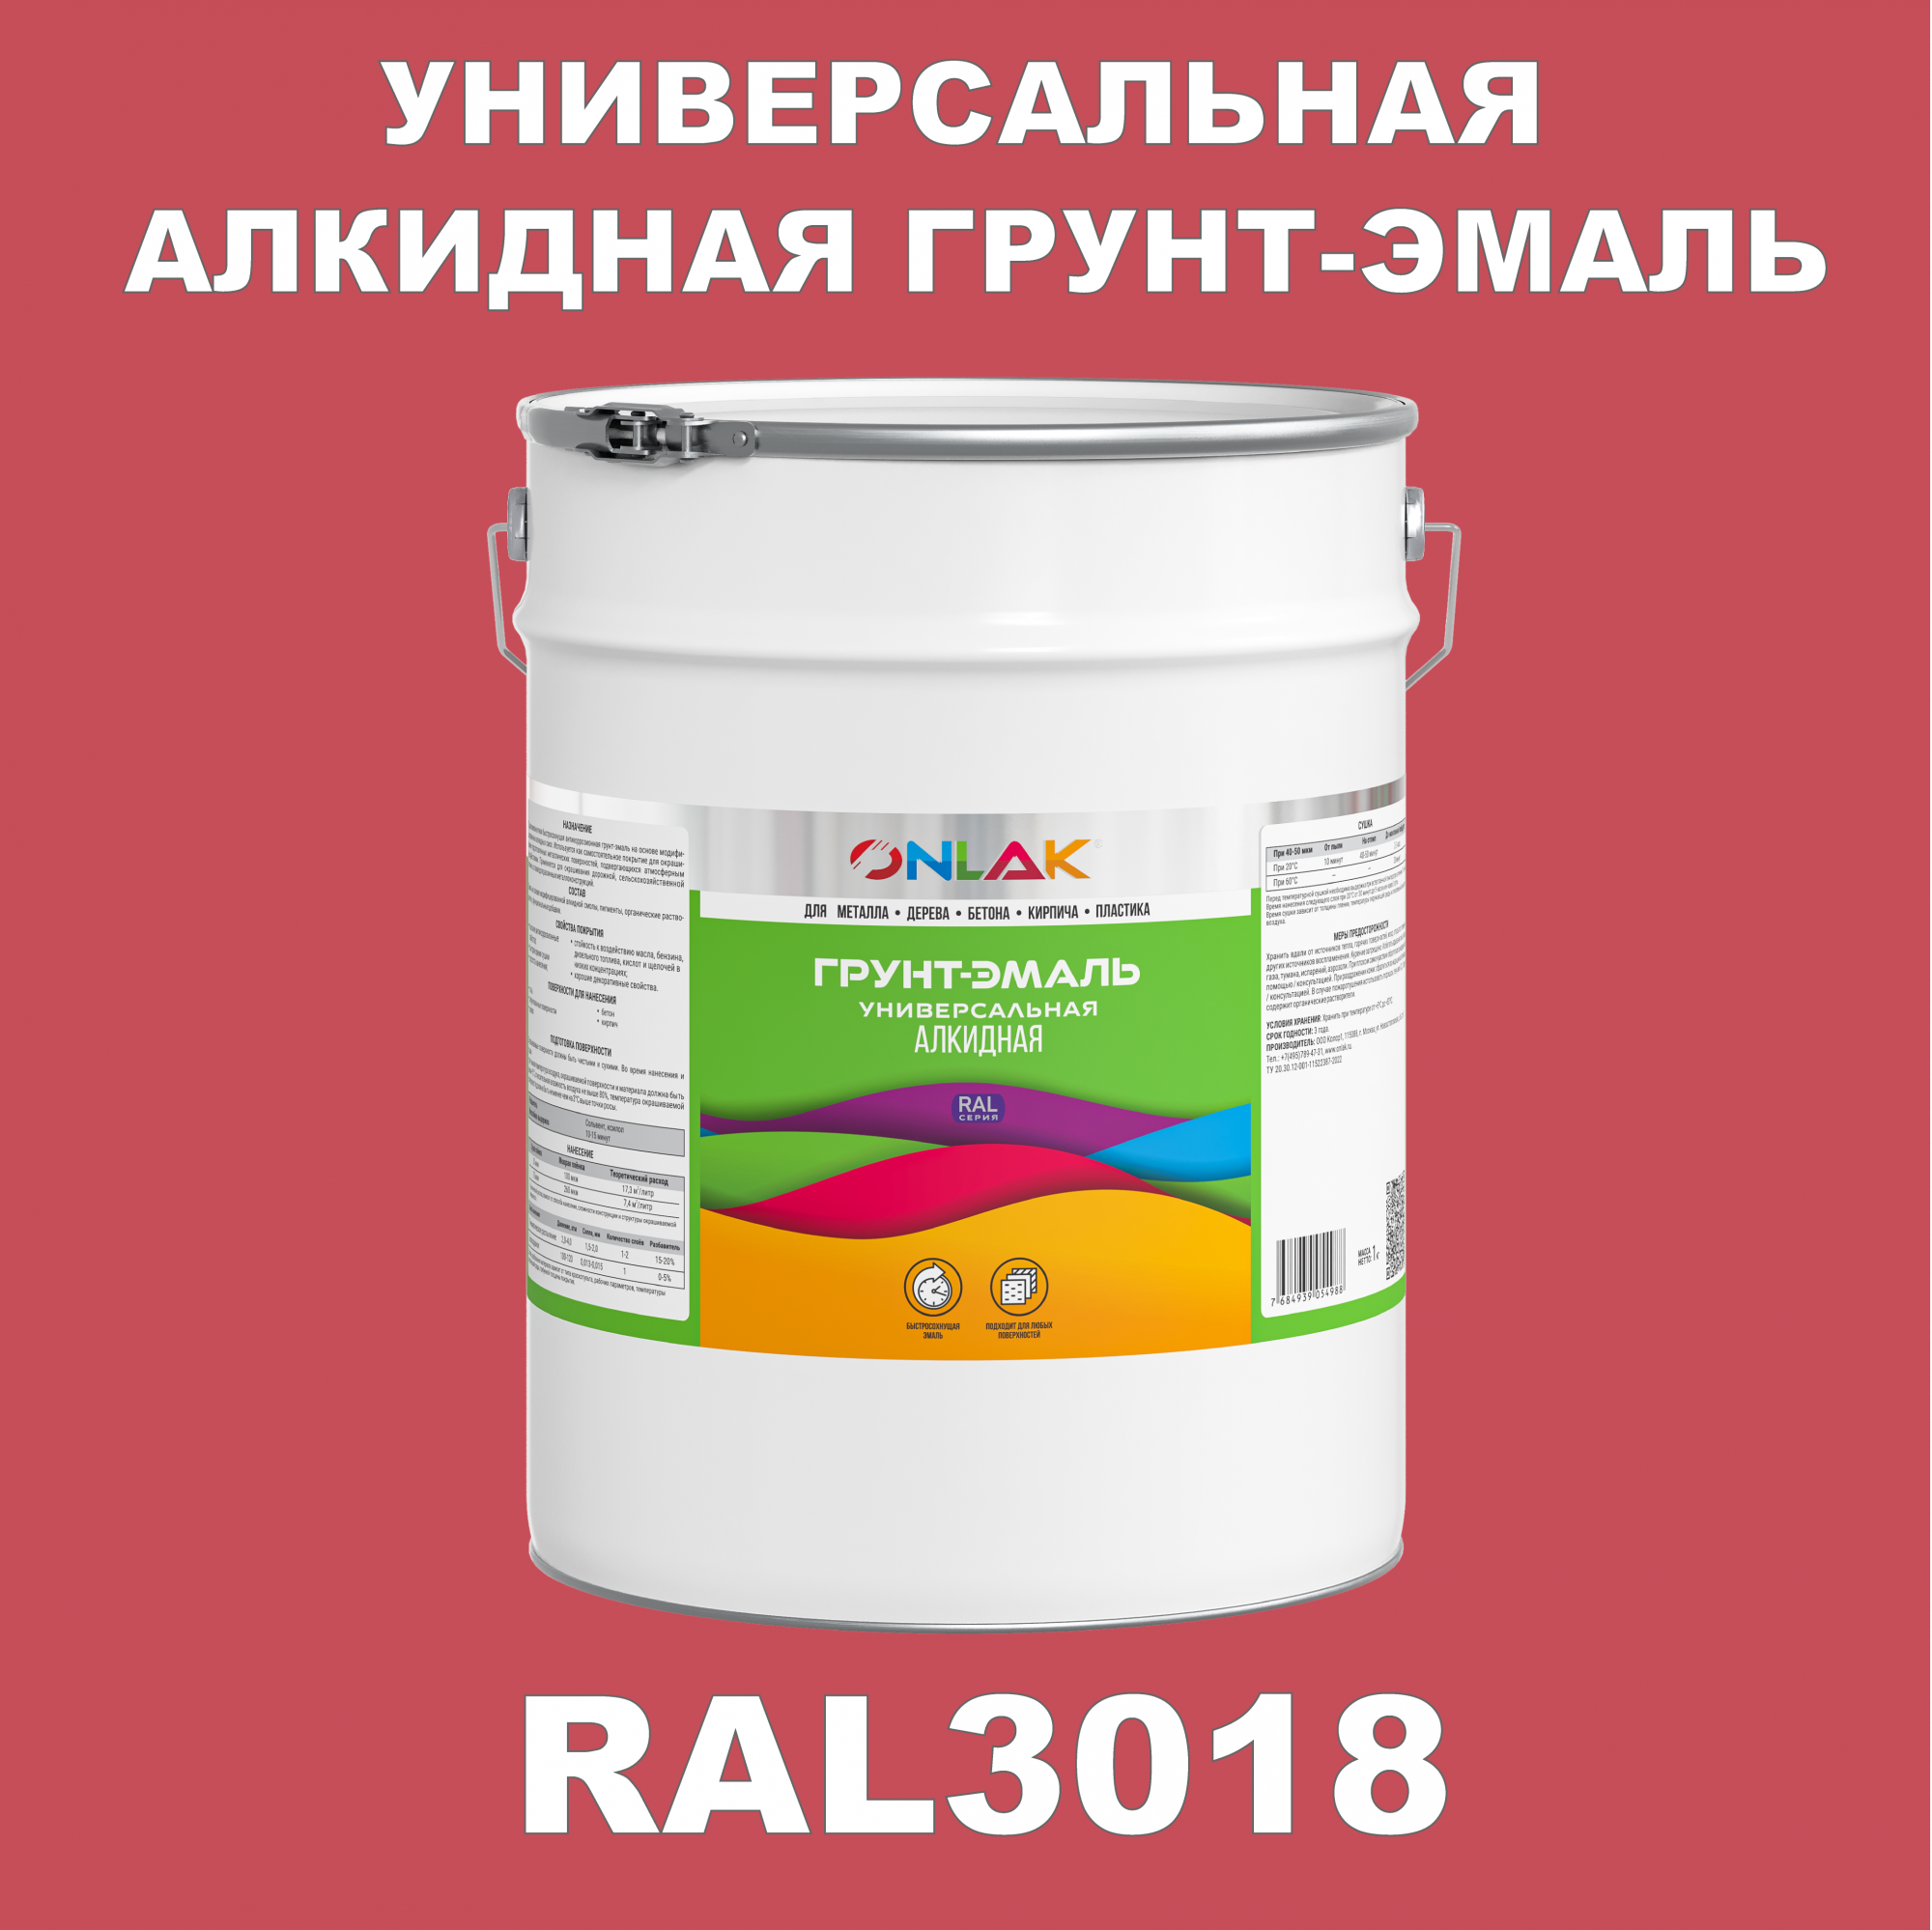 Грунт-эмаль ONLAK 1К RAL3018 антикоррозионная алкидная по металлу по ржавчине 20 кг грунт эмаль skladno по ржавчине алкидная желтая 1 8 кг